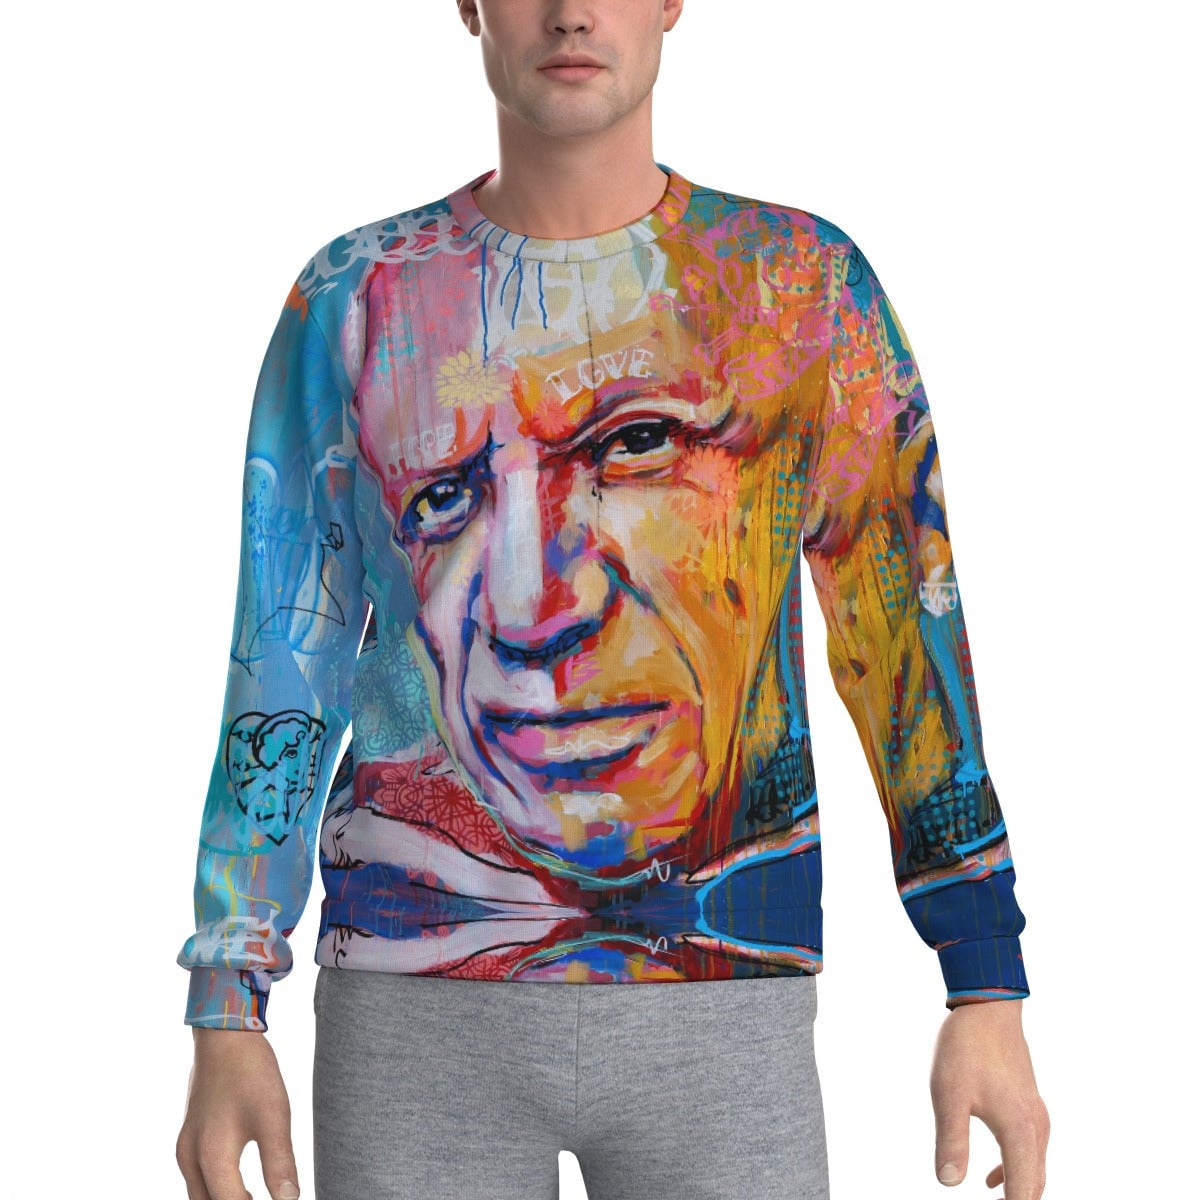 Pablo Piccaso Famous Pop Art Surrealism Collage Sweatshirt